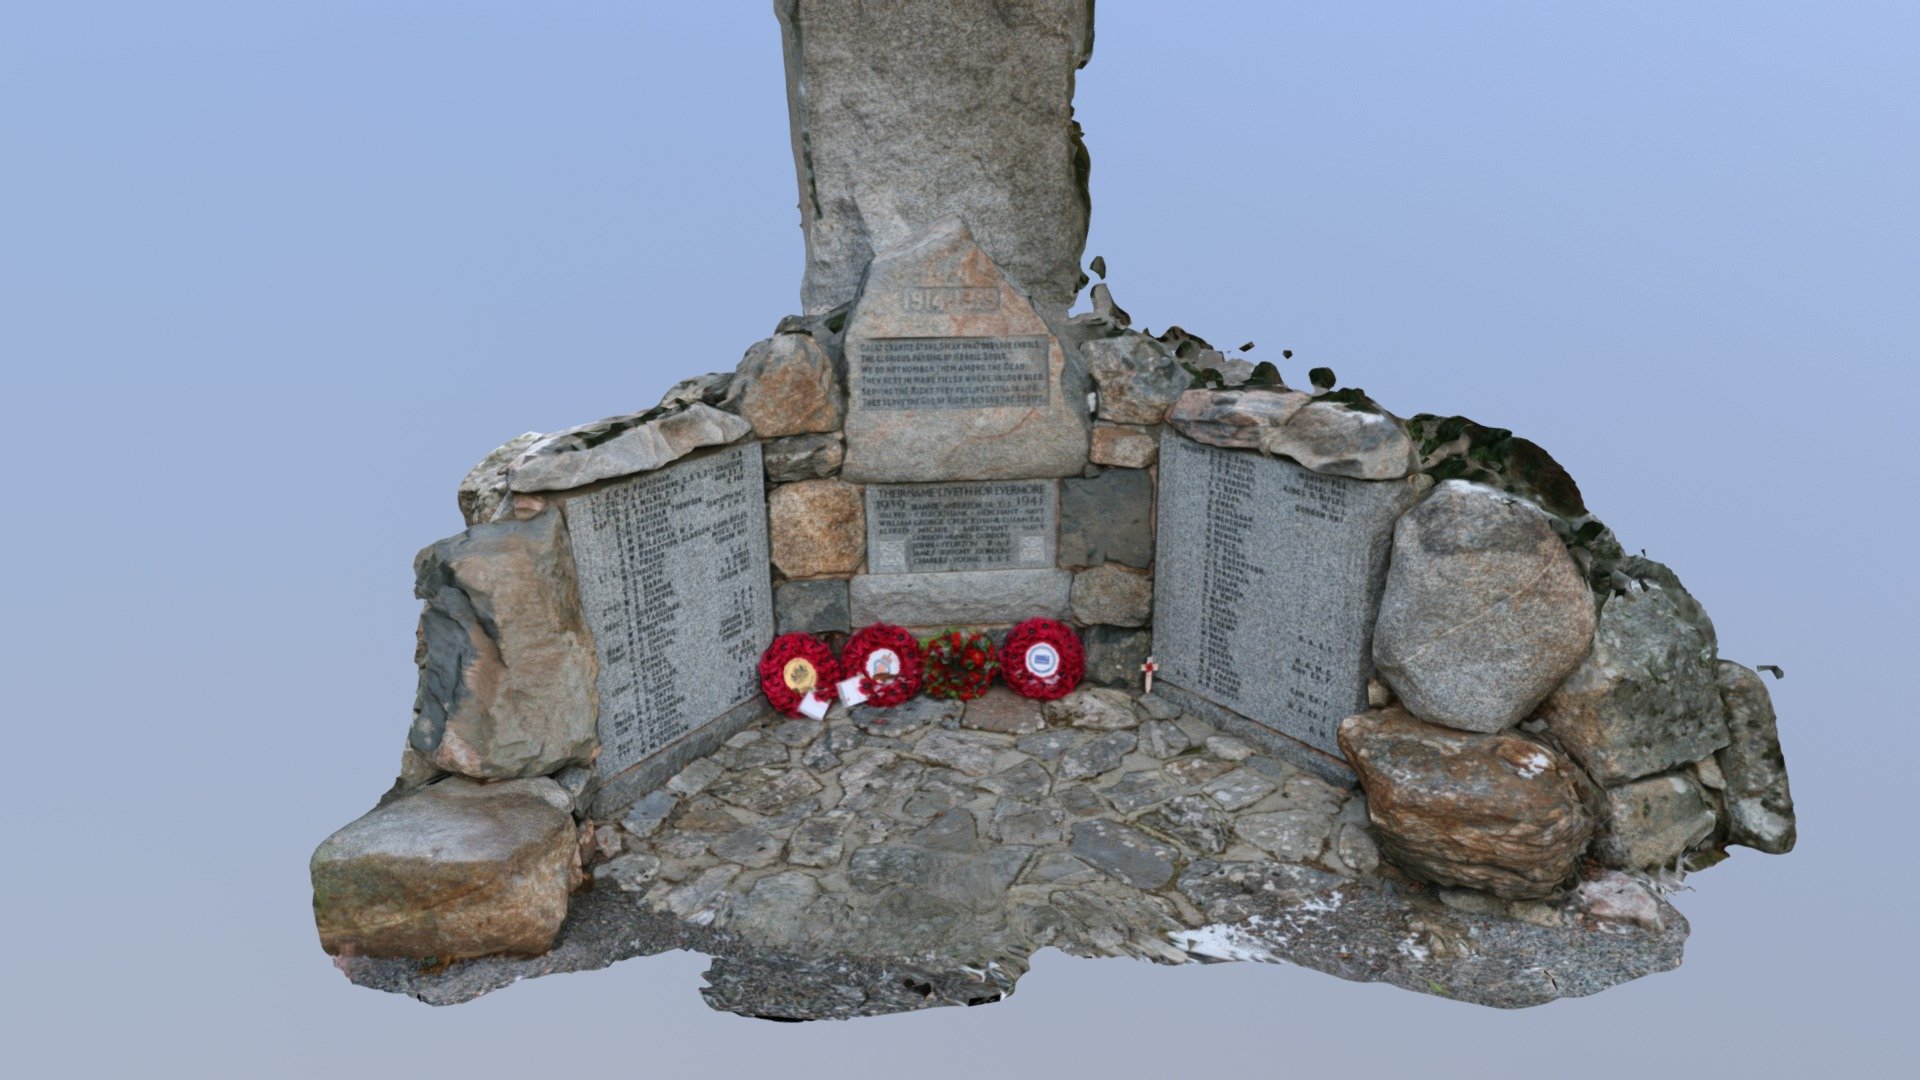 Torphins War Memorial